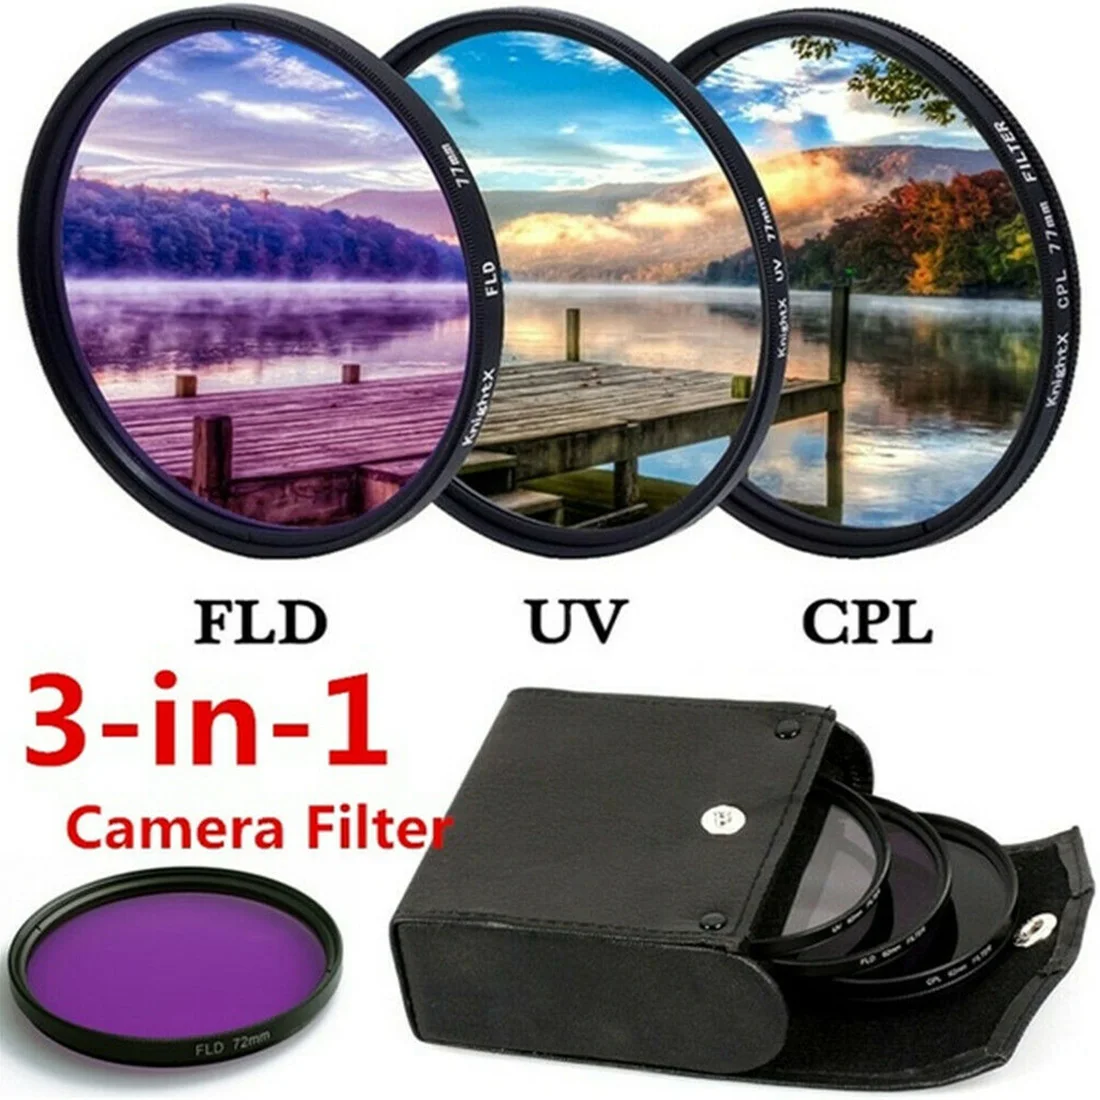 Пылезащитная зеркальная камера защита для фото 3 в 1 объектив портативный фильтр набор сумка для хранения дорожная УФ CPL FLD аксессуары